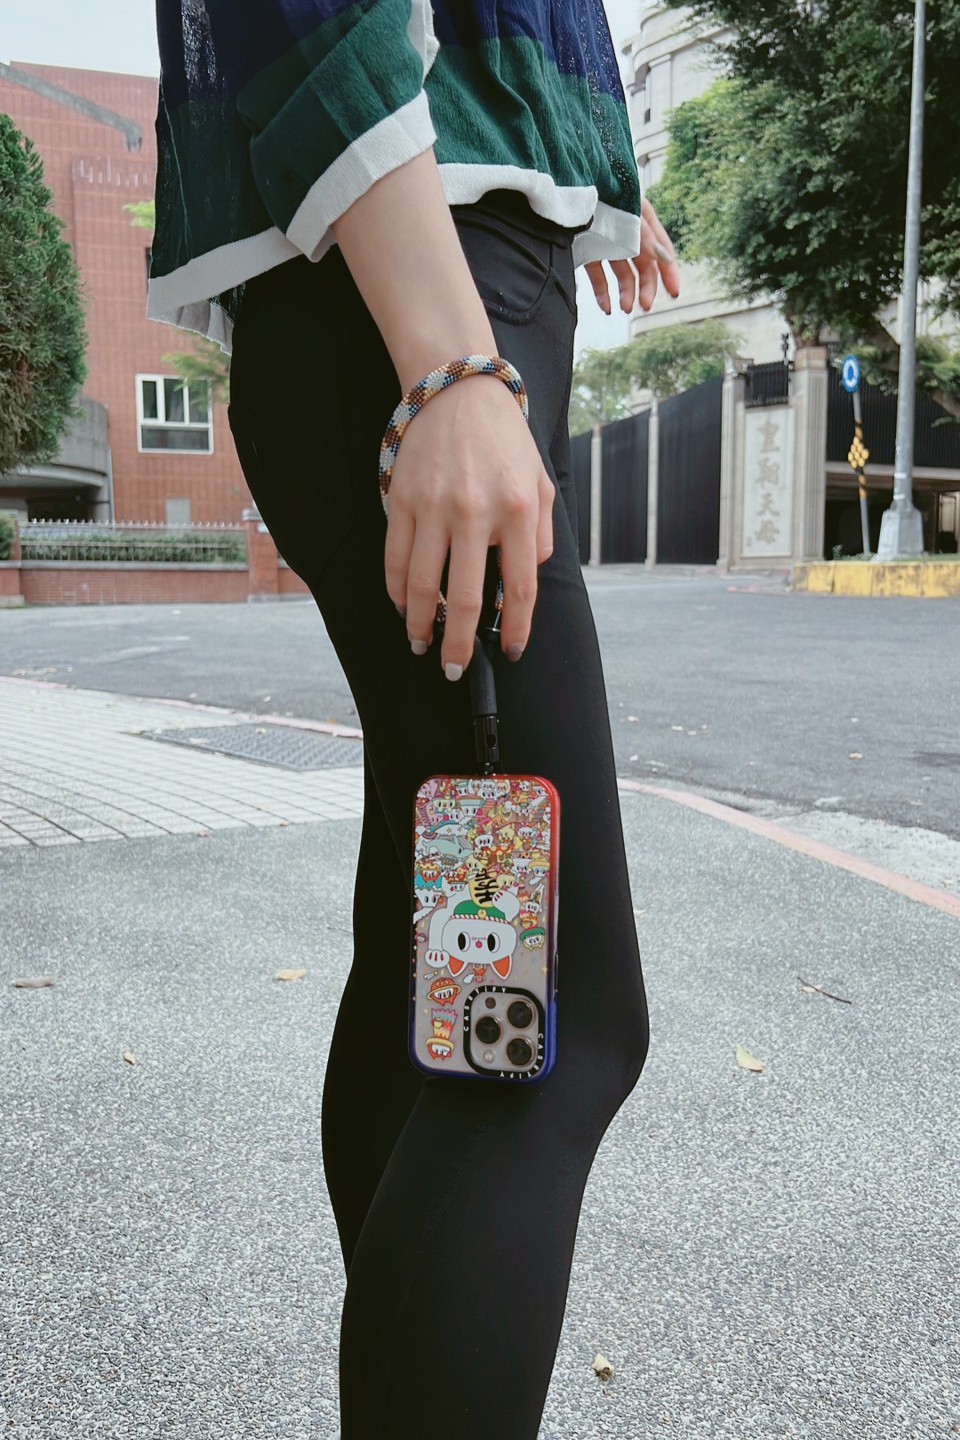 [啾團] 英國M.Craftsman Yoggle 手機背帶,快速拆裝,時尚加身,擁有舒適背感的時尚手機背帶